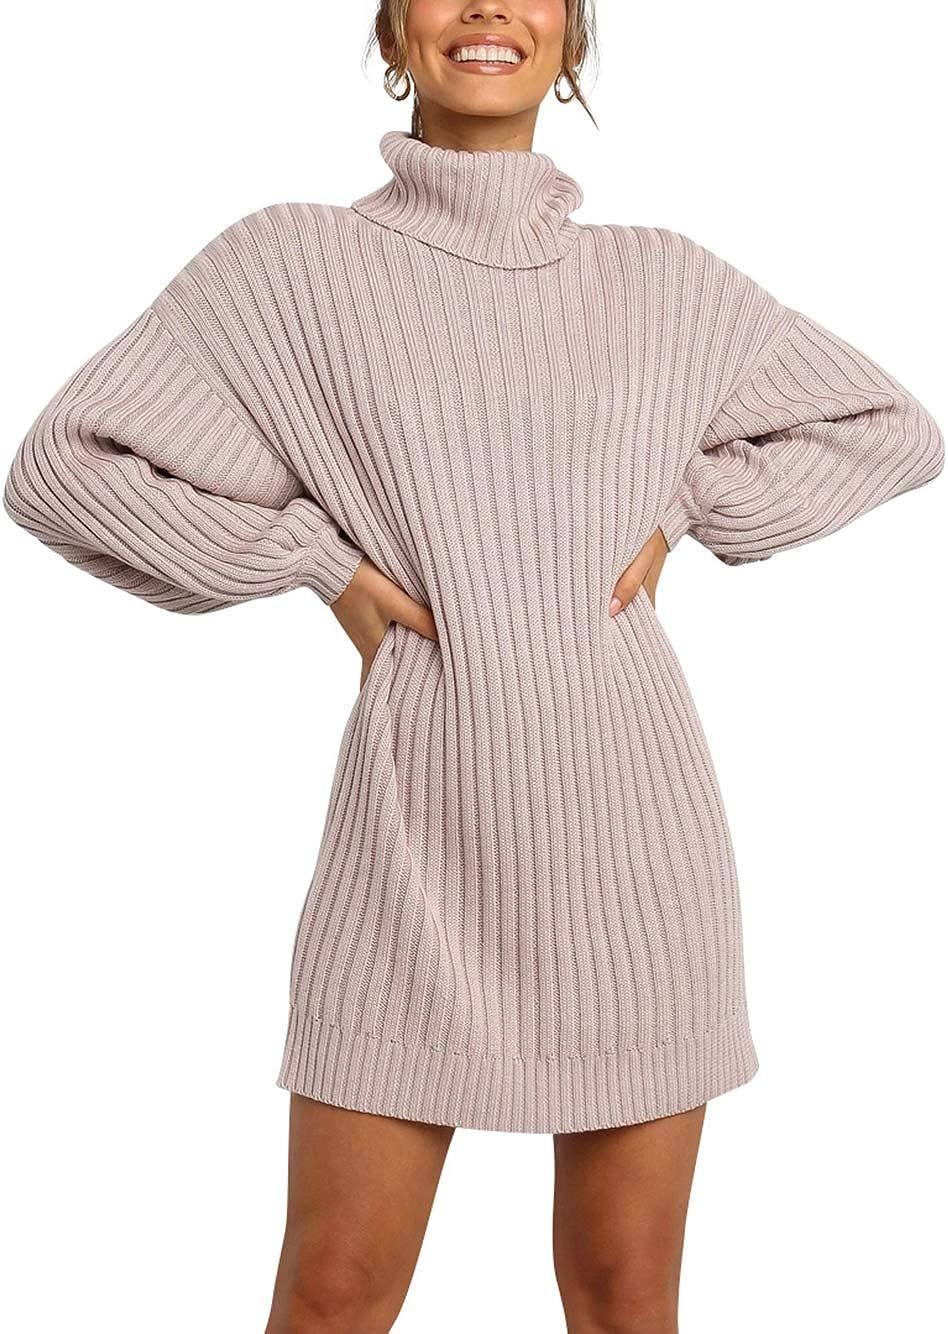 ANRABESS Women Winter Fall Cozy Soft Turtleneck Long Sleeve Casual Tunic Sweater Knit Mini Dress ... | Amazon (US)